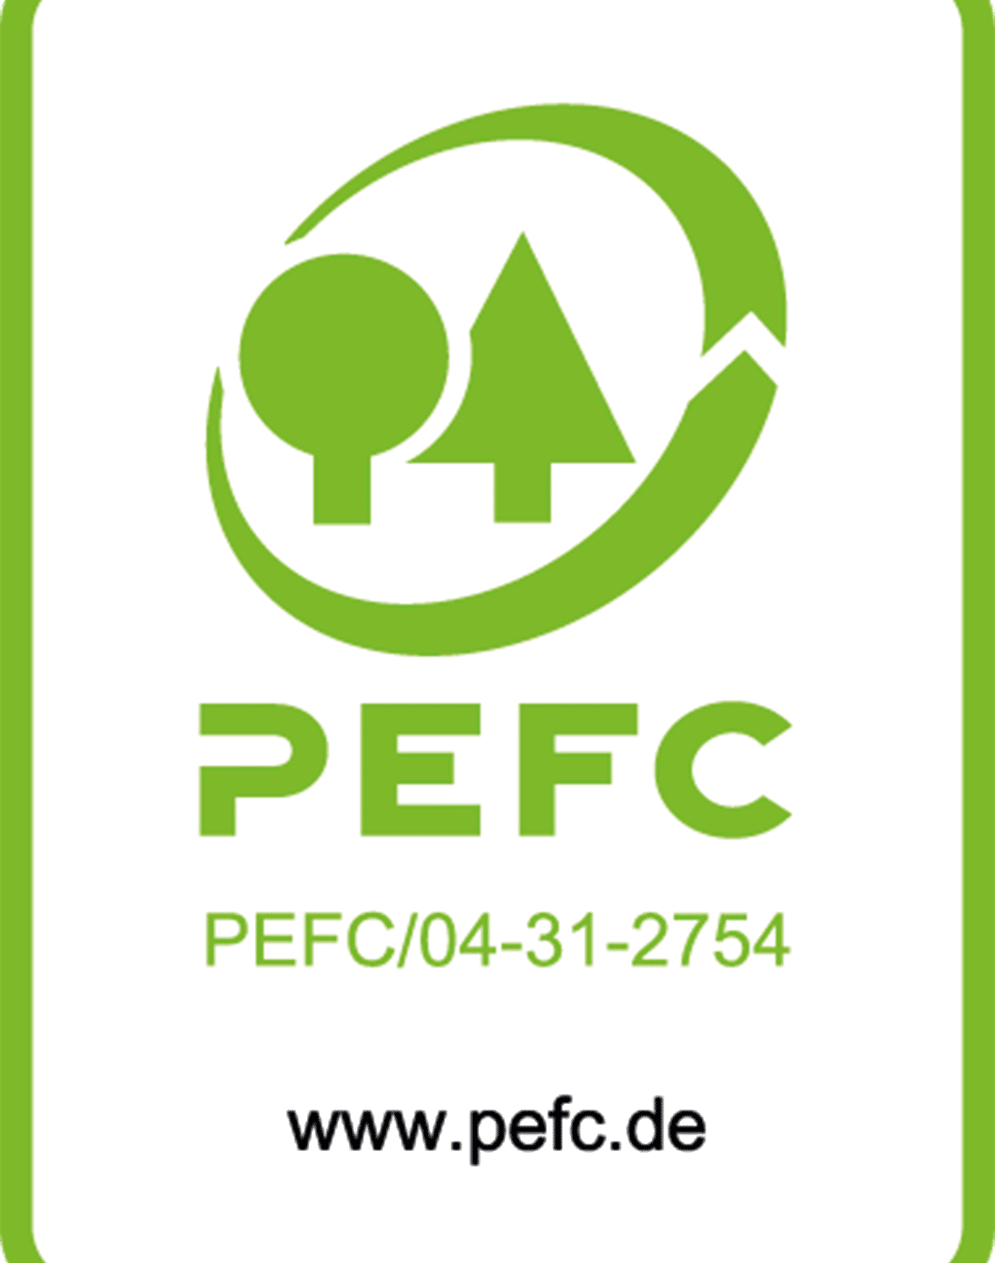 pefc-label-pefc04-31-2754-weblogo_1000x1380